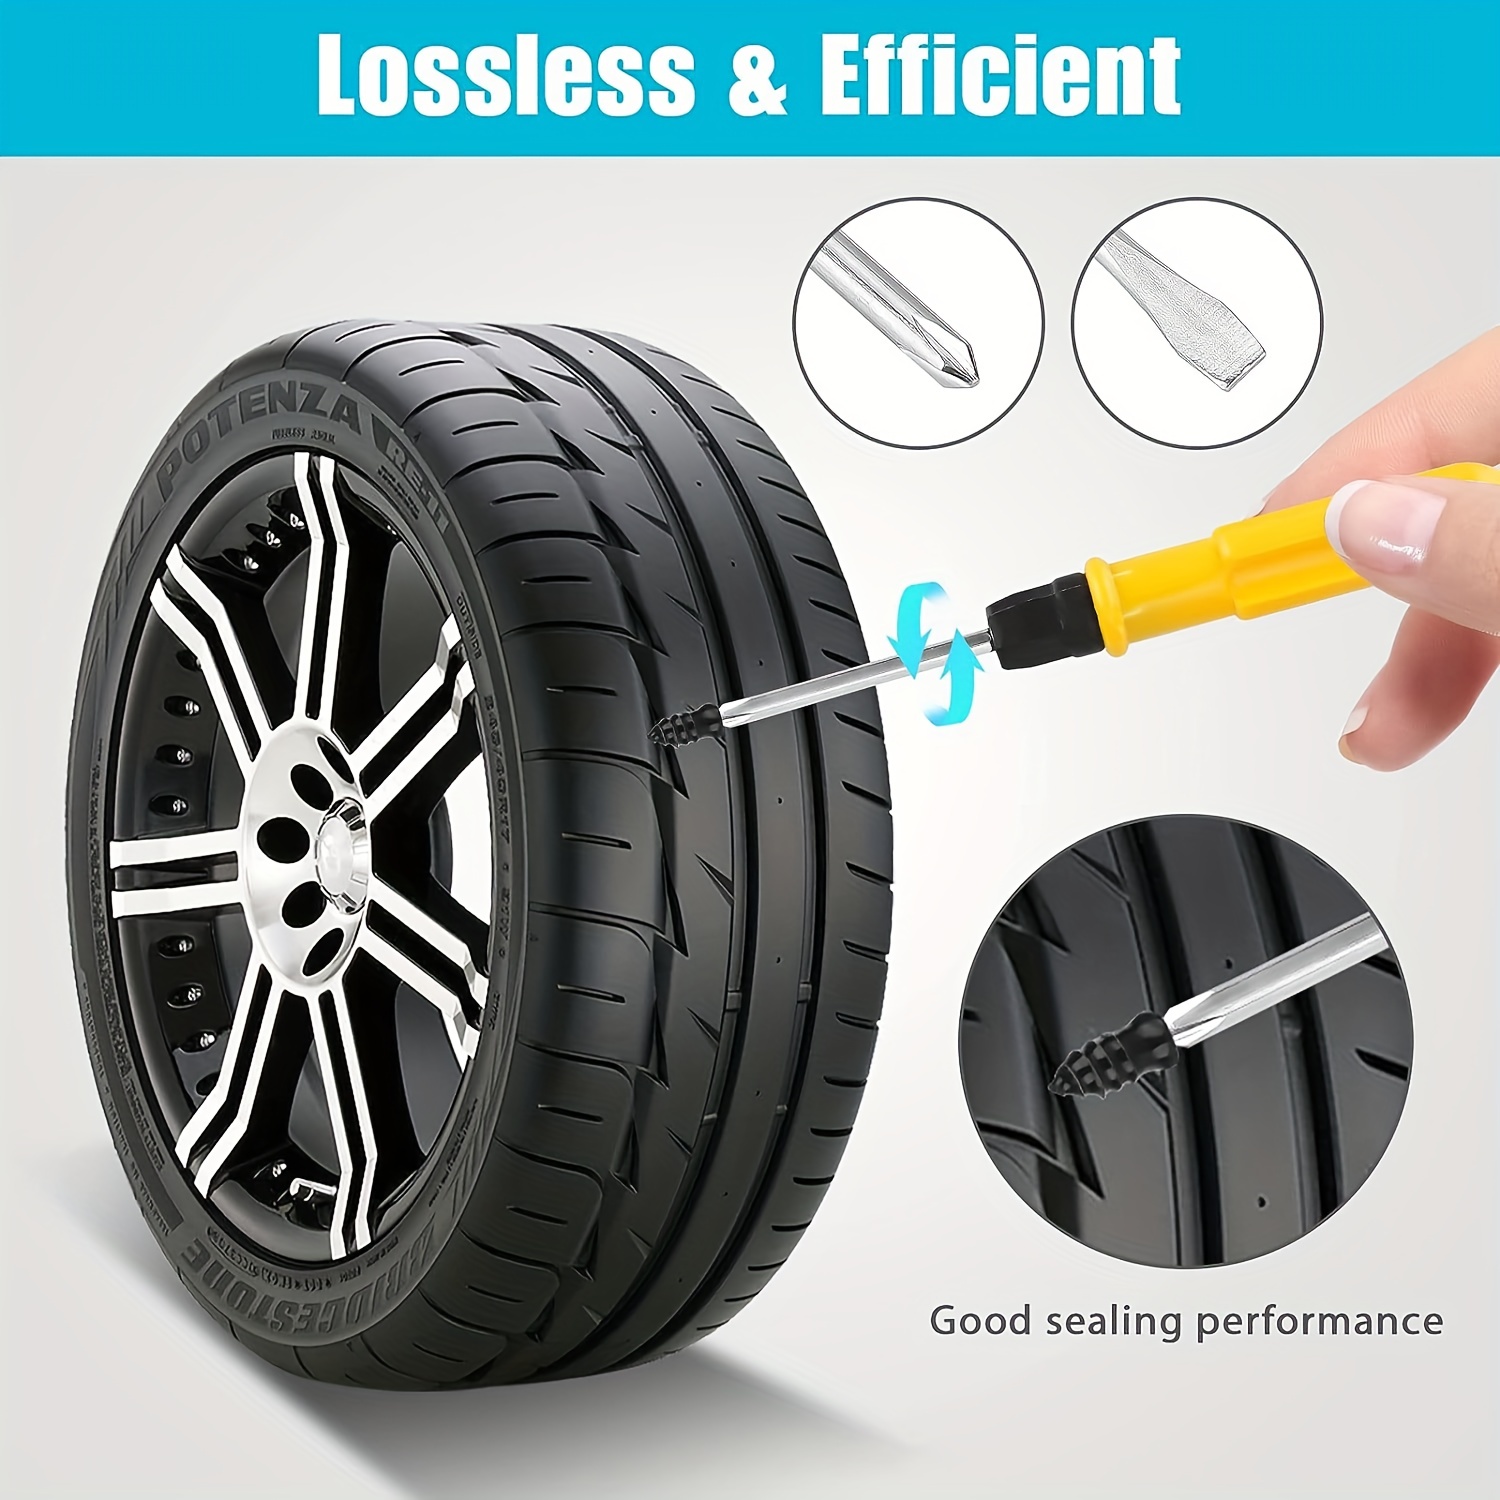 Kaufe 10 stücke Vakuum Reifen Reparatur Nagel Für Auto Lkw